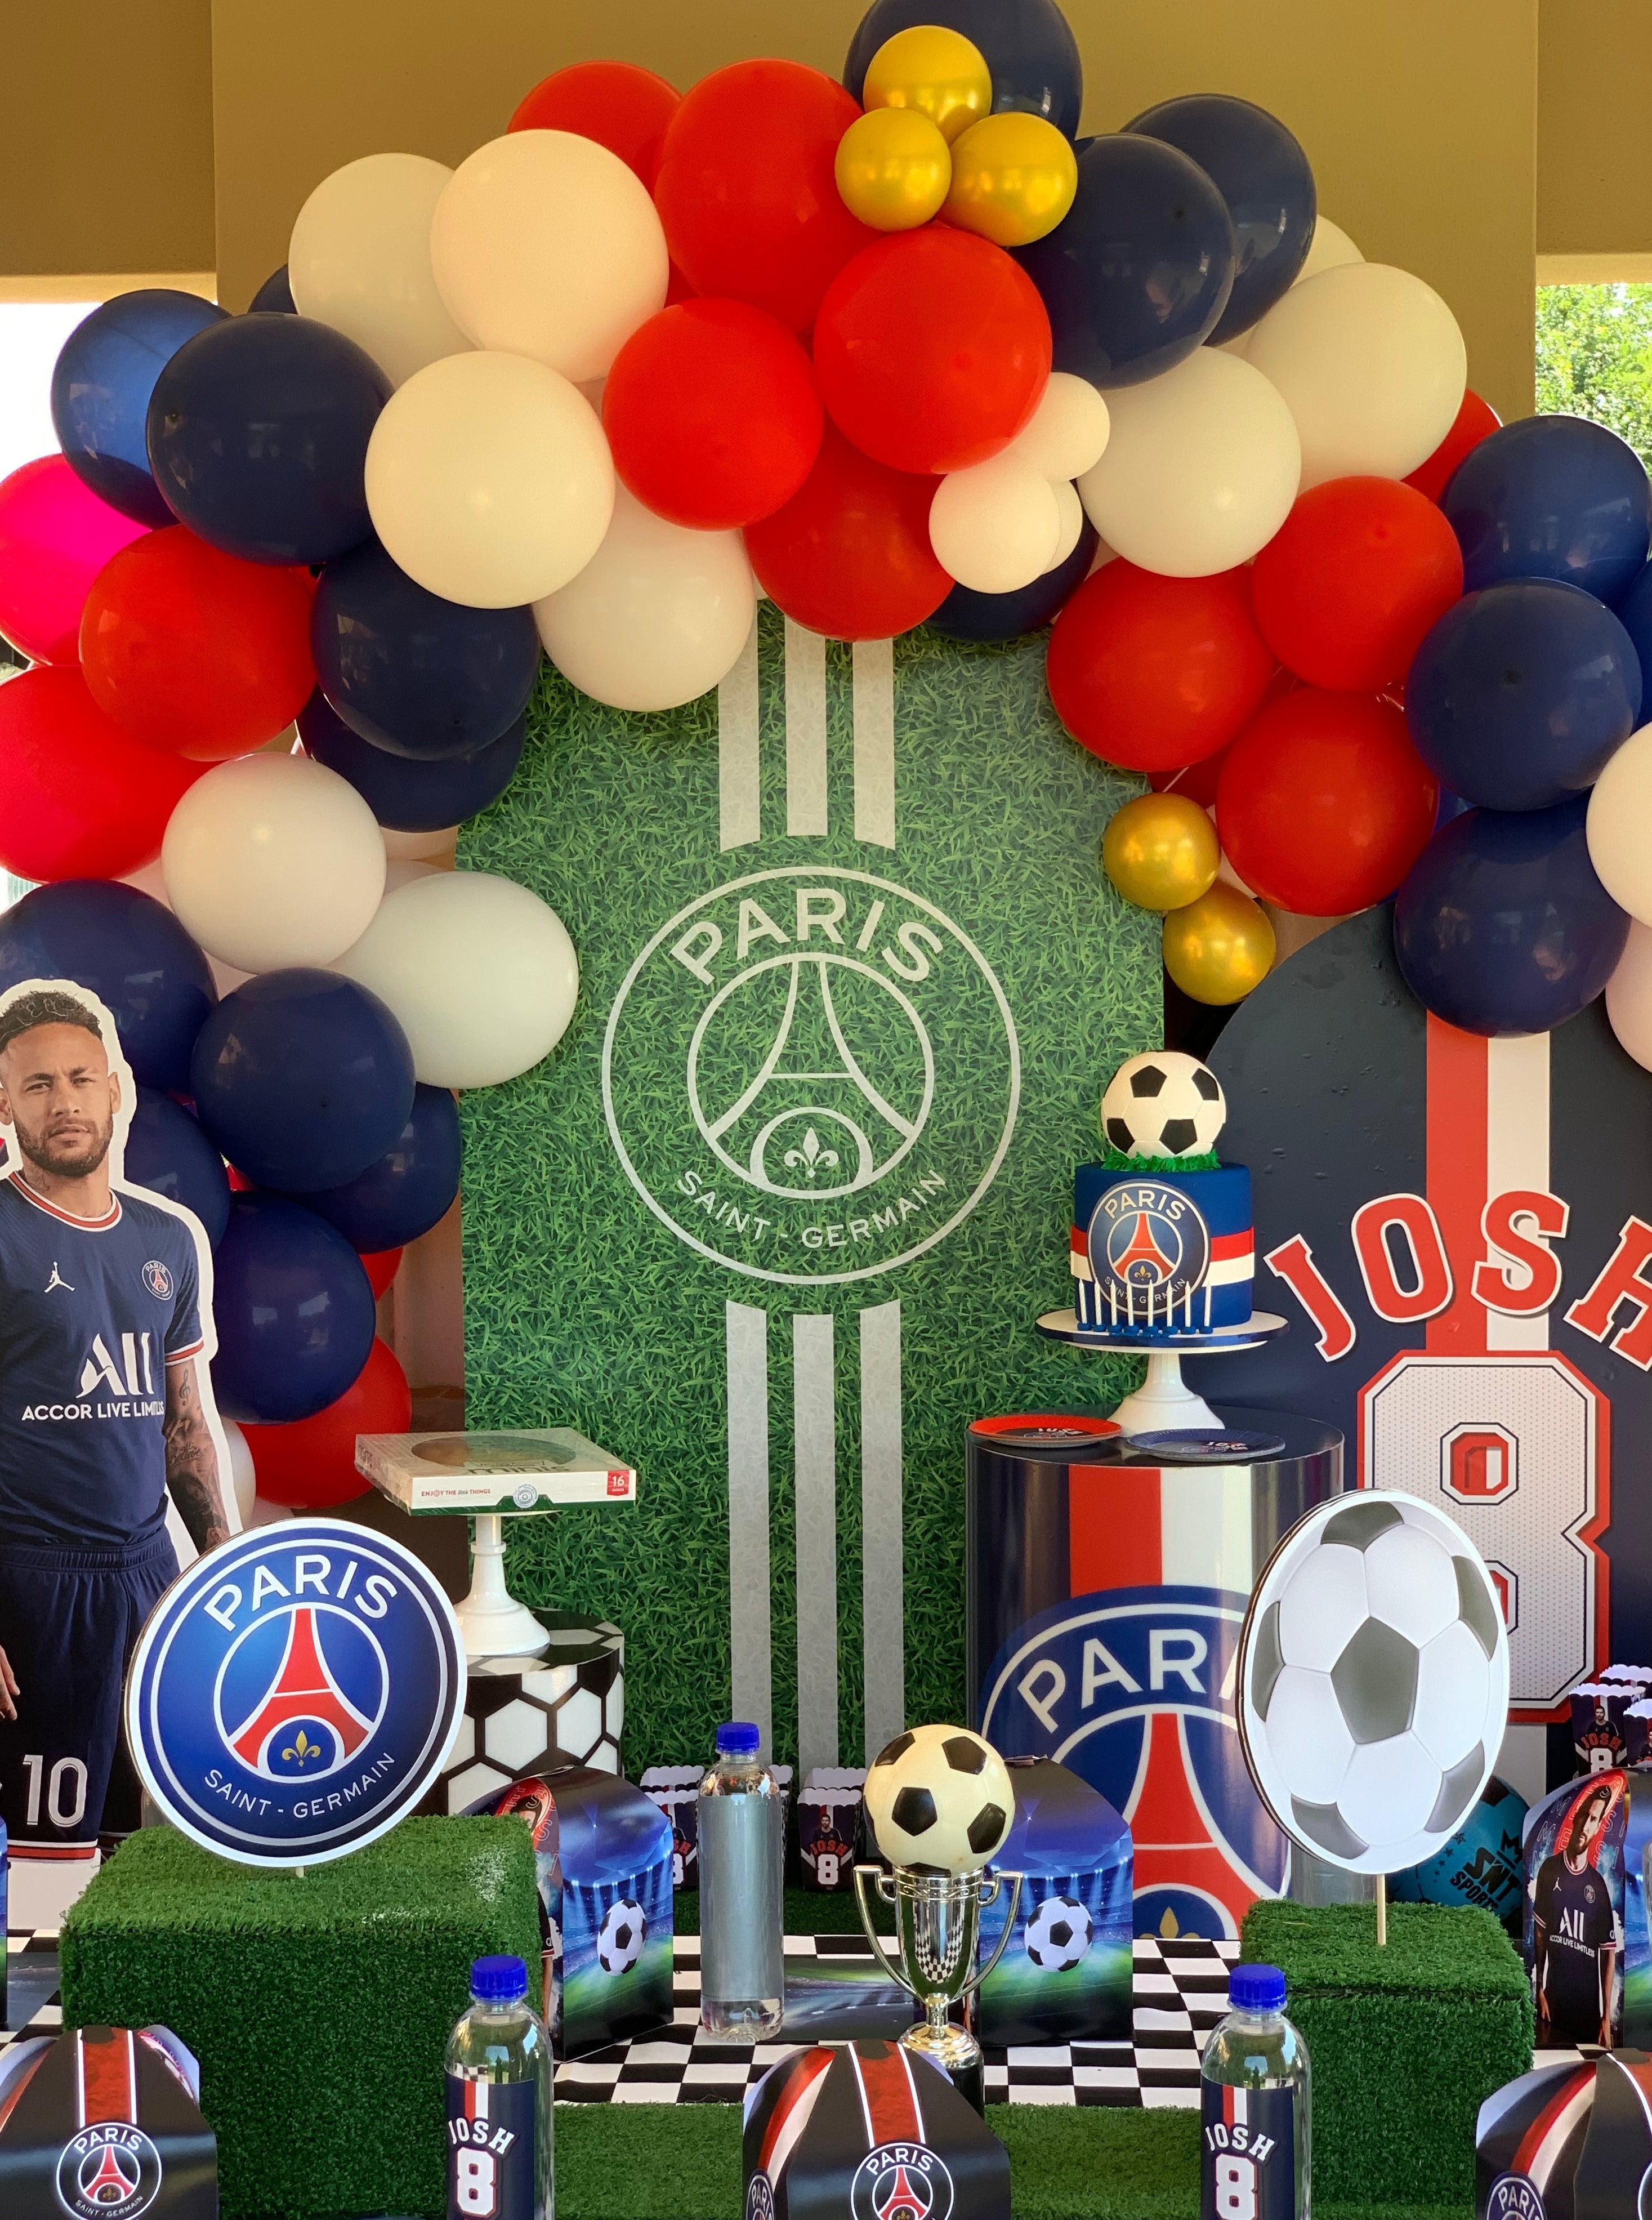 Soccer - Paris Saint Germain – Lily Young Designs